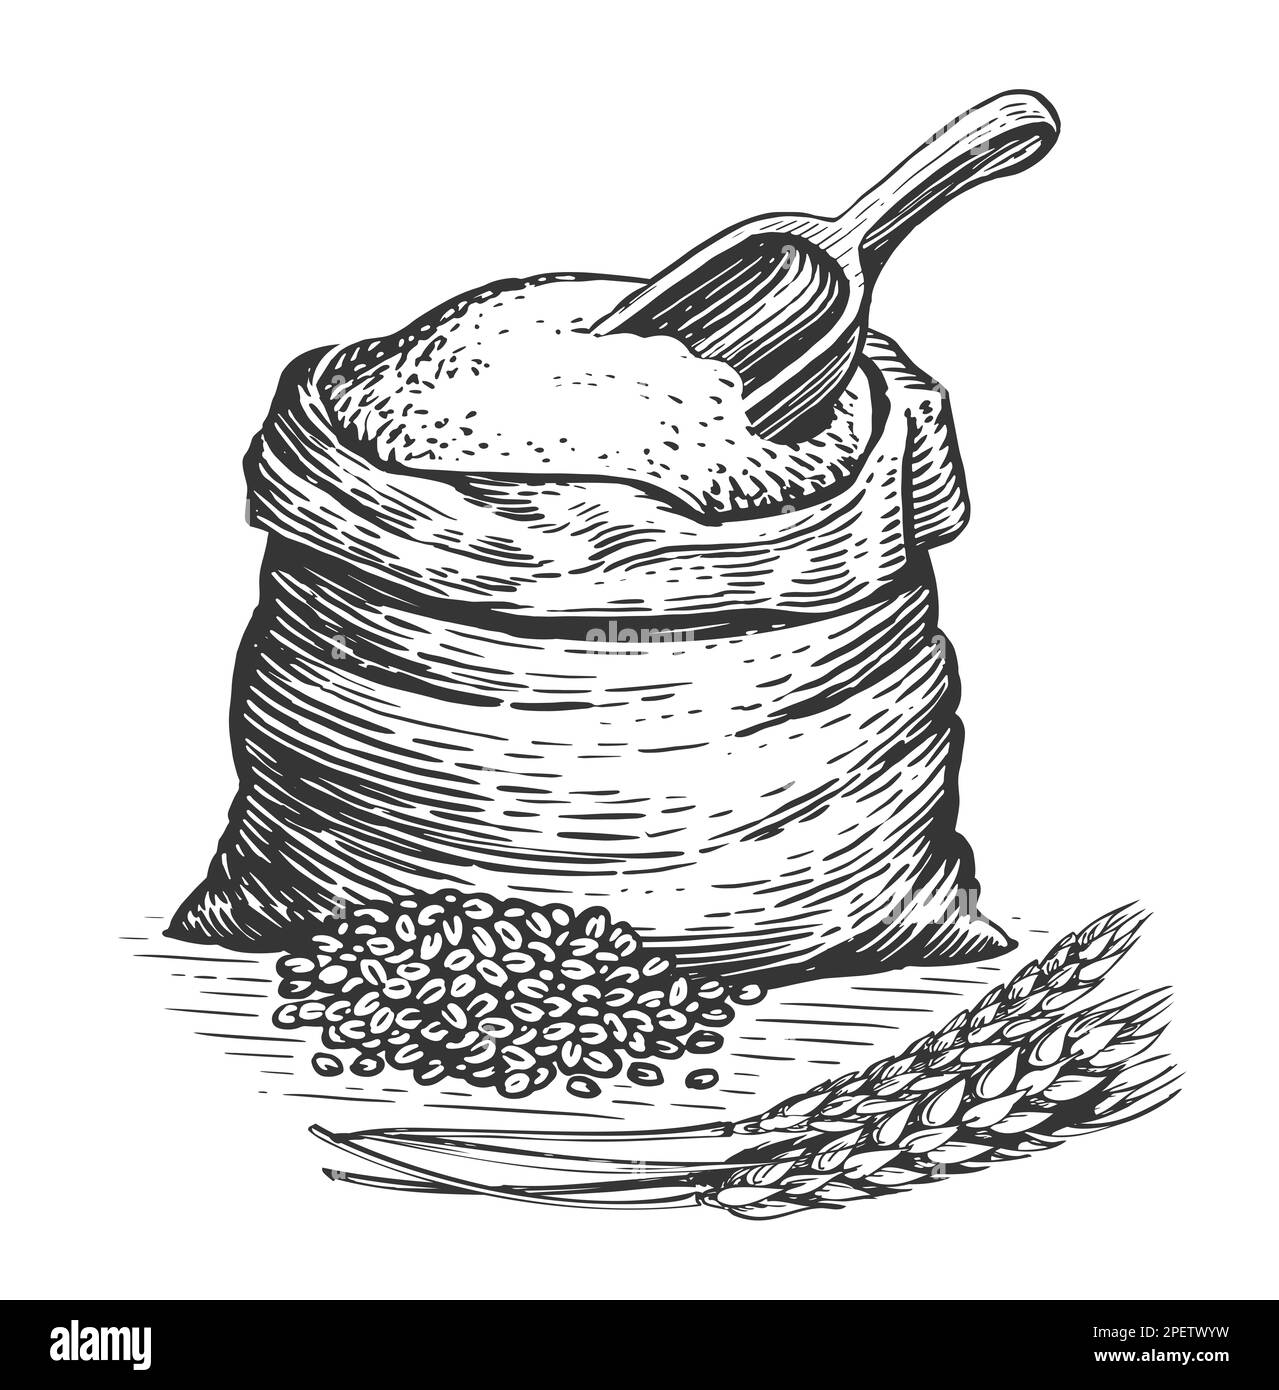 Sack oder Sack mit Vollkornbrotmehl, Gerstenkörnern, Holzlöffel und Ähren von Weizen. Skizze von Bauernfutter Stockfoto